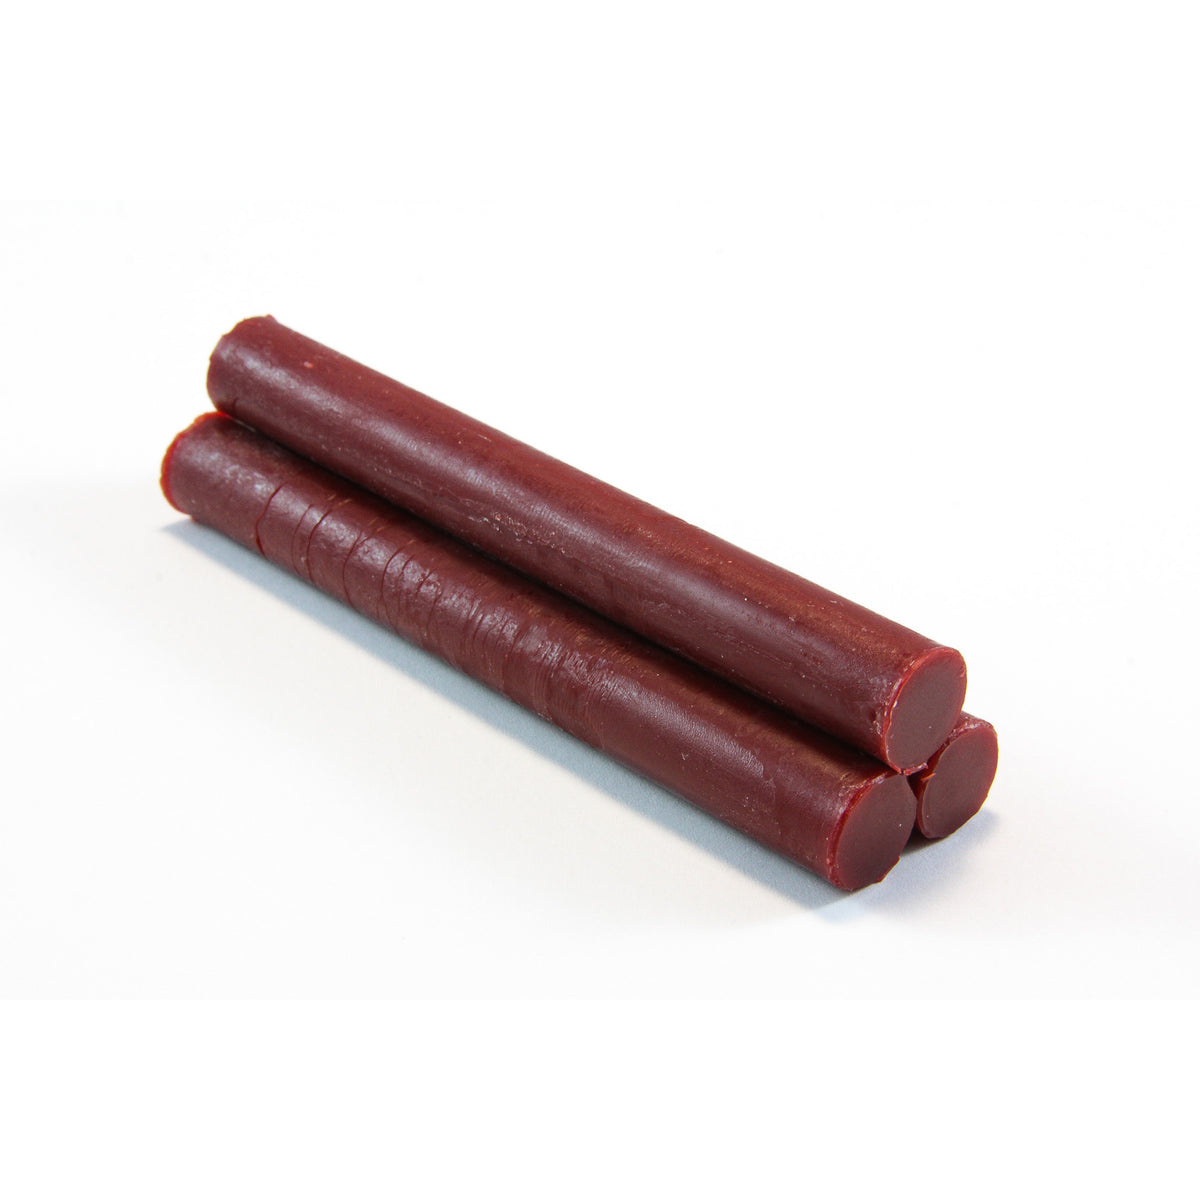 5pc Wax Sealing Sticks - intense color! – KUMA Stationery & Crafts